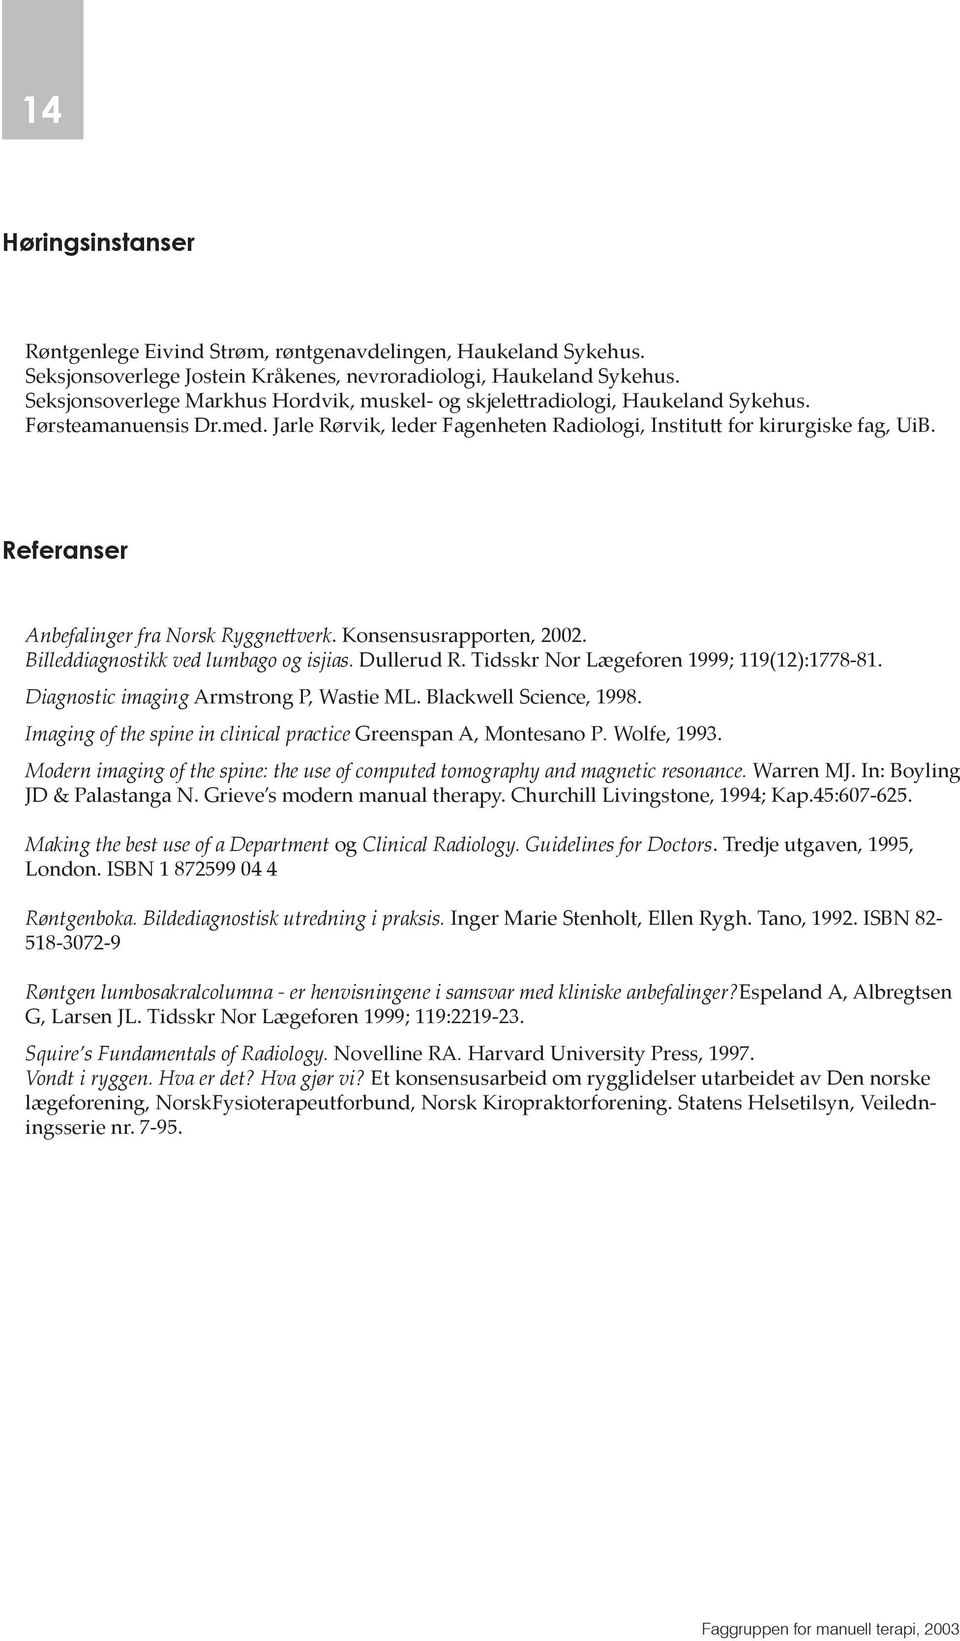 Referanser Anbefalinger fra Norsk Ryggne verk. Konsensusrapporten, 2002. Billeddiagnostikk ved lumbago og isjias. Dullerud R. Tidsskr Nor Lægeforen 1999; 119(12):1778-81.